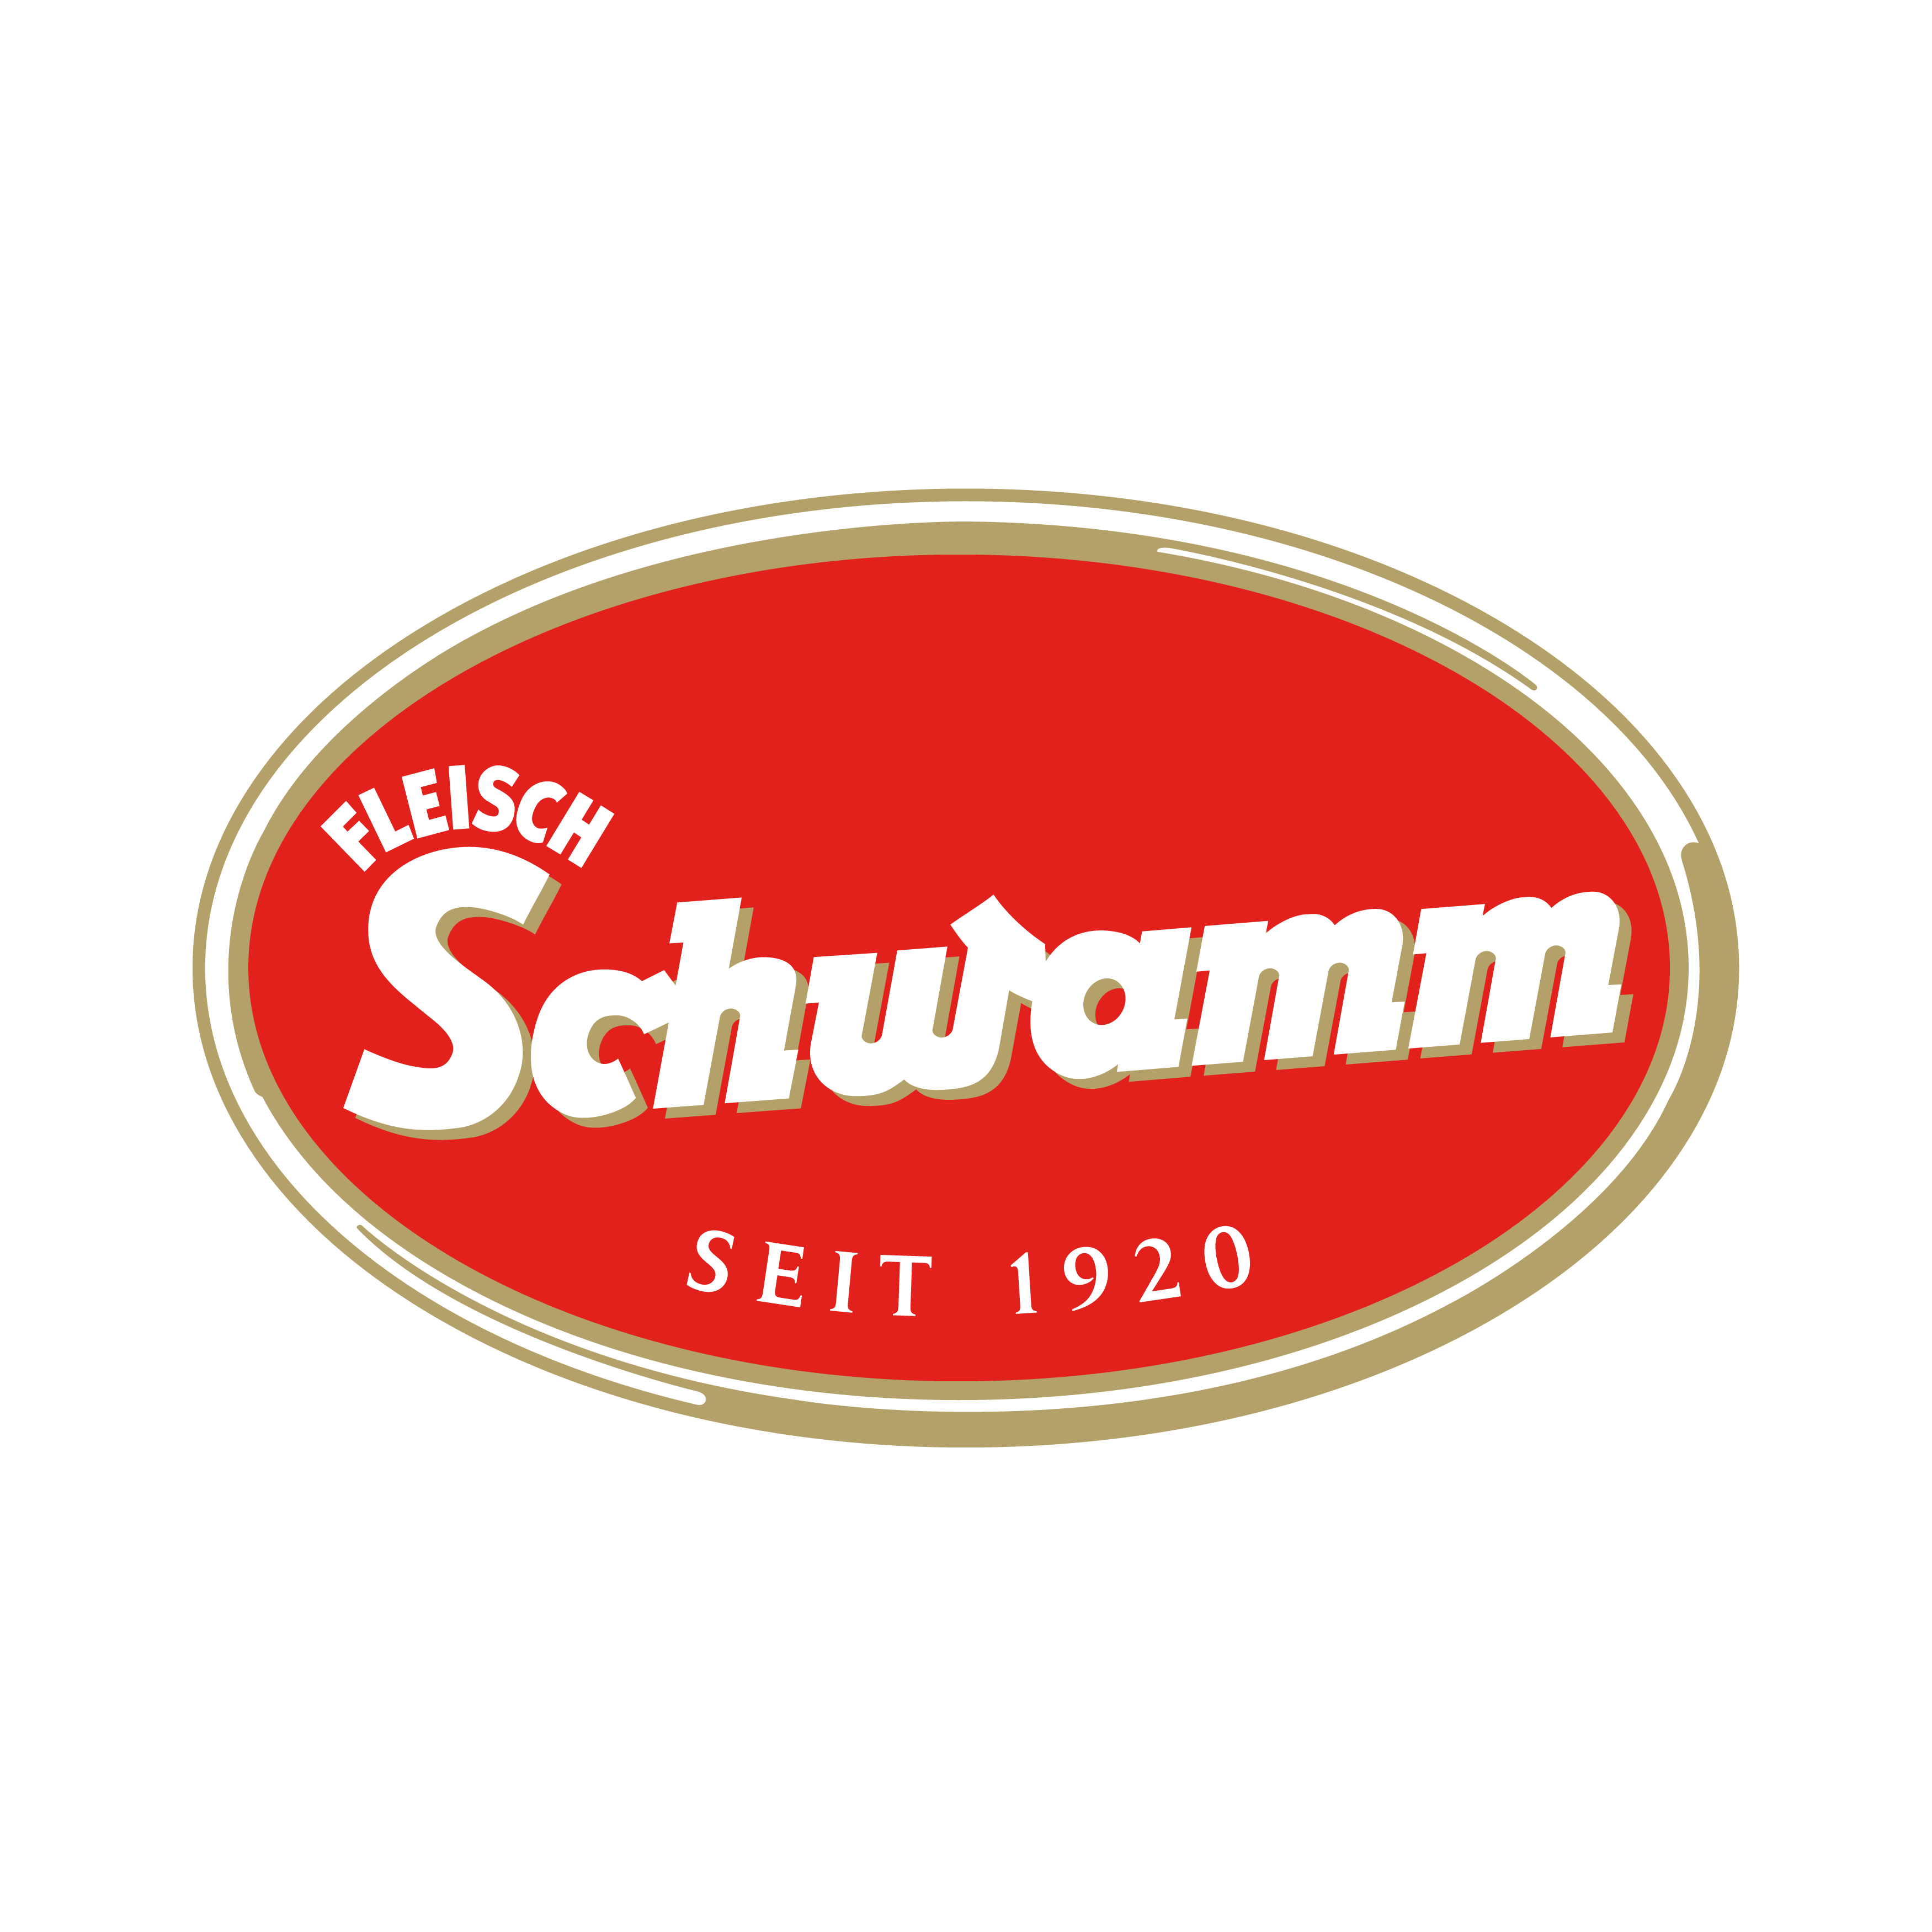 Schwamm Logo